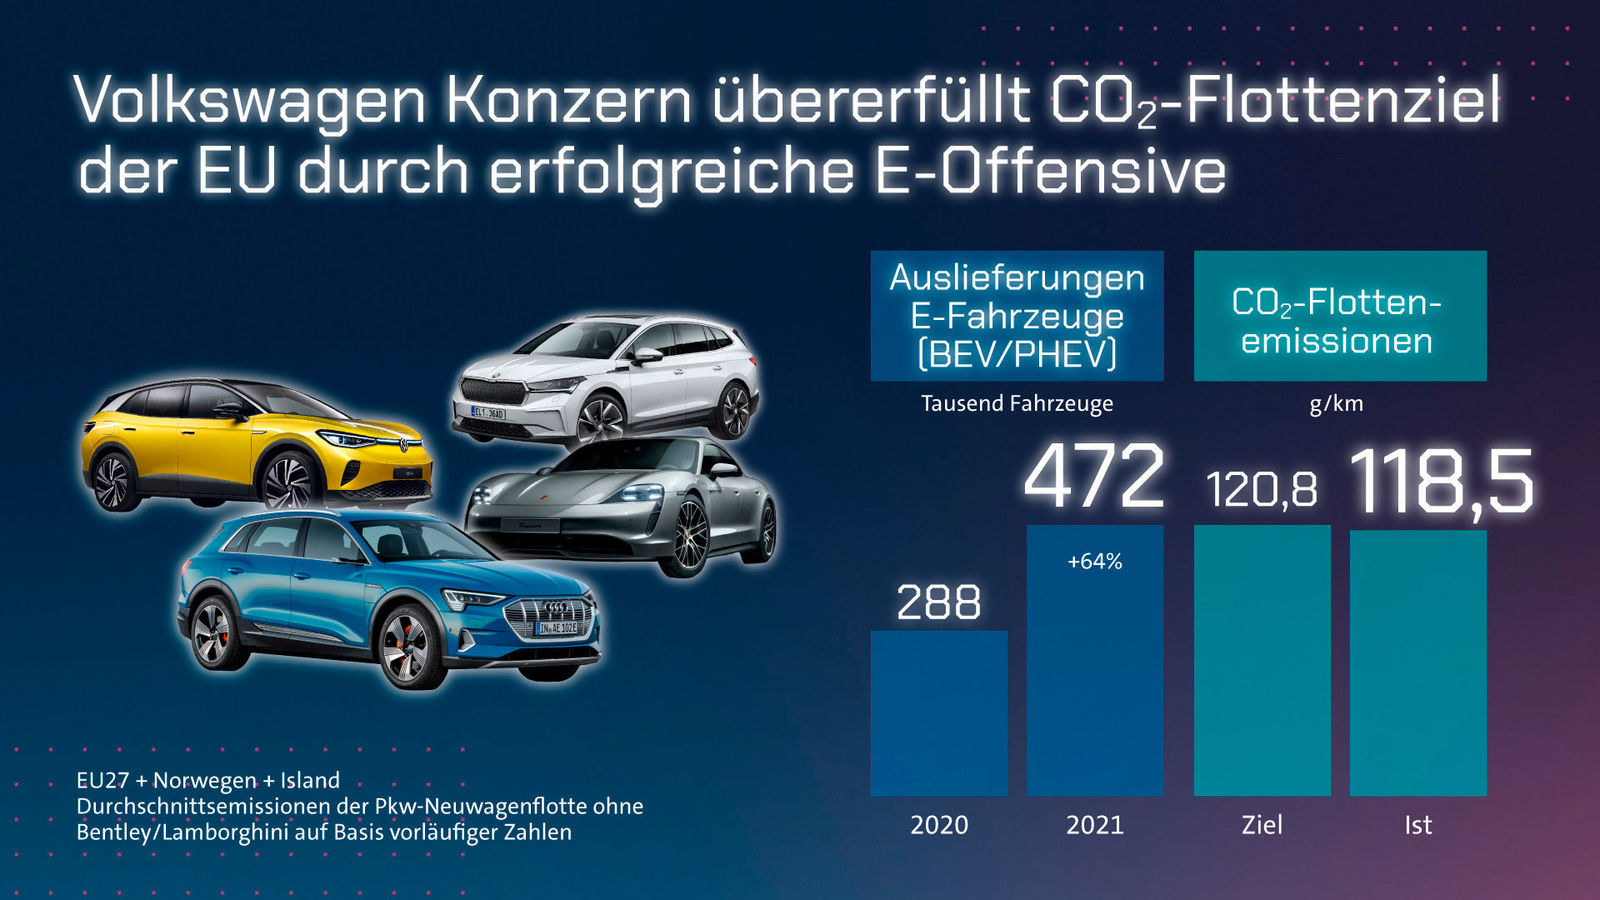 Volkswagen Konzern treibt Dekarbonisierung voran und übererfüllt CO2-Flottenziel der EU